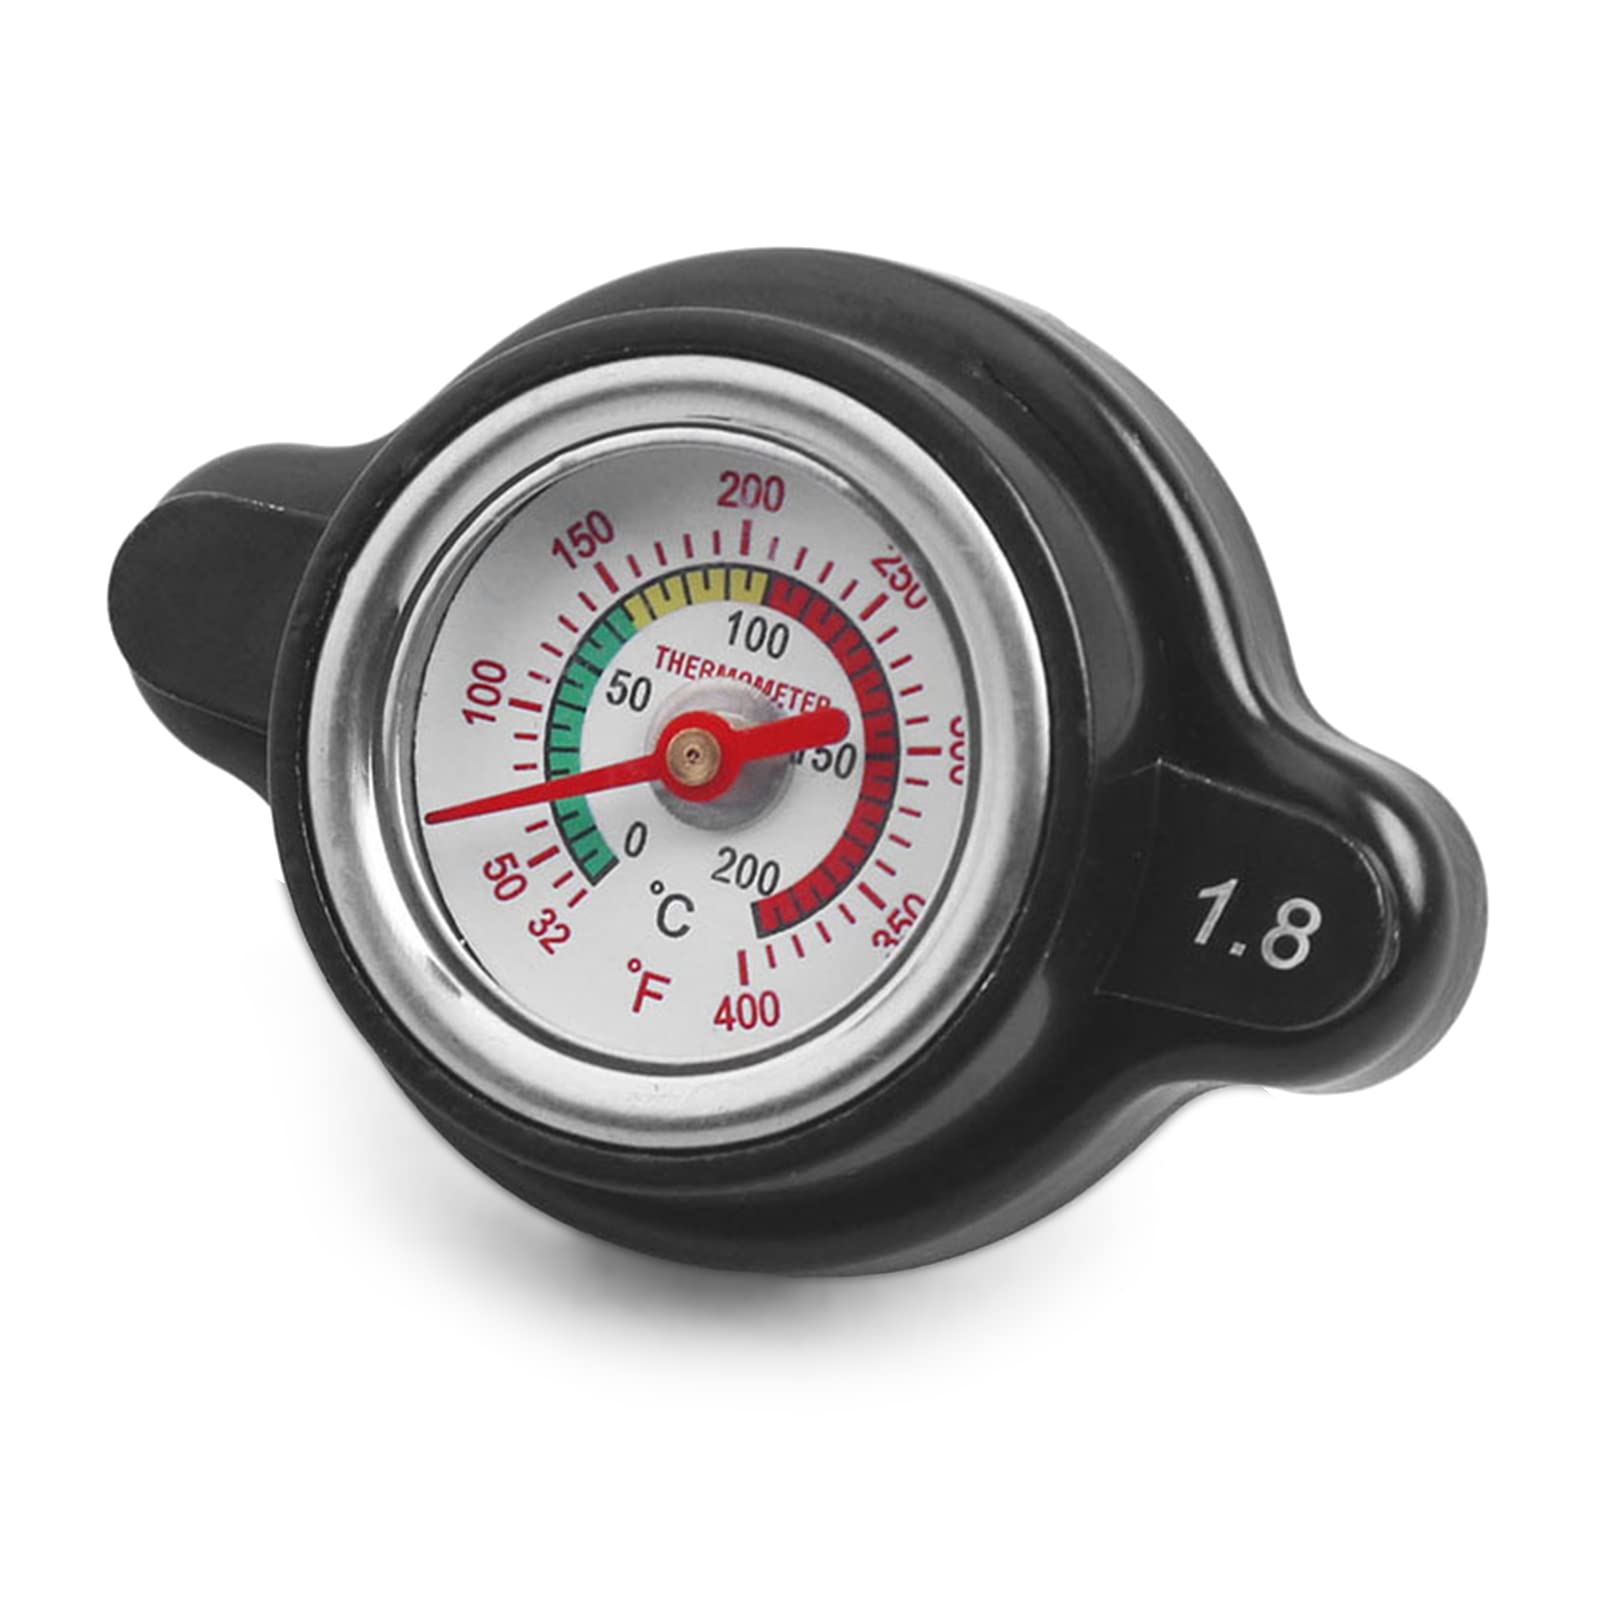 Thermost Kühlerdeckel für Motorräder, Auto, Wassertemperaturanzeige, 1,8 25,6 Psi von Fhsqwernm